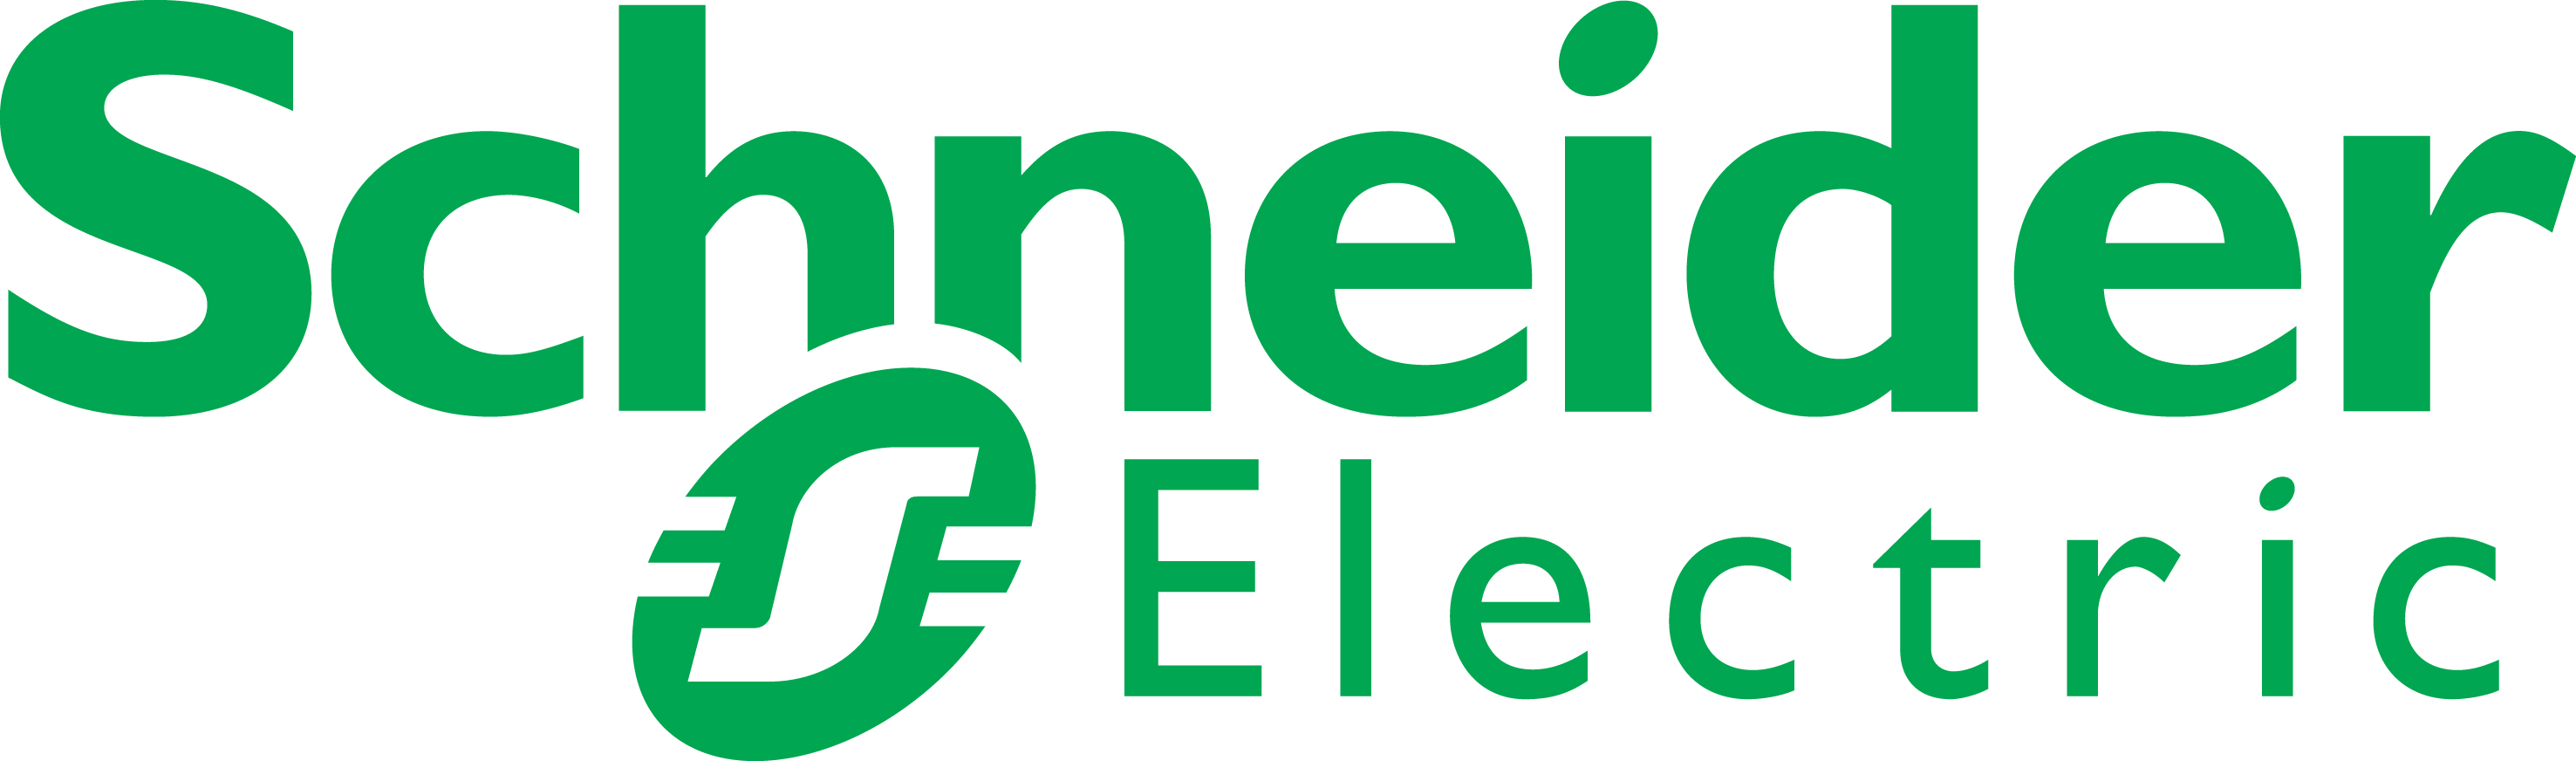 Schneider-Electric-Logo 